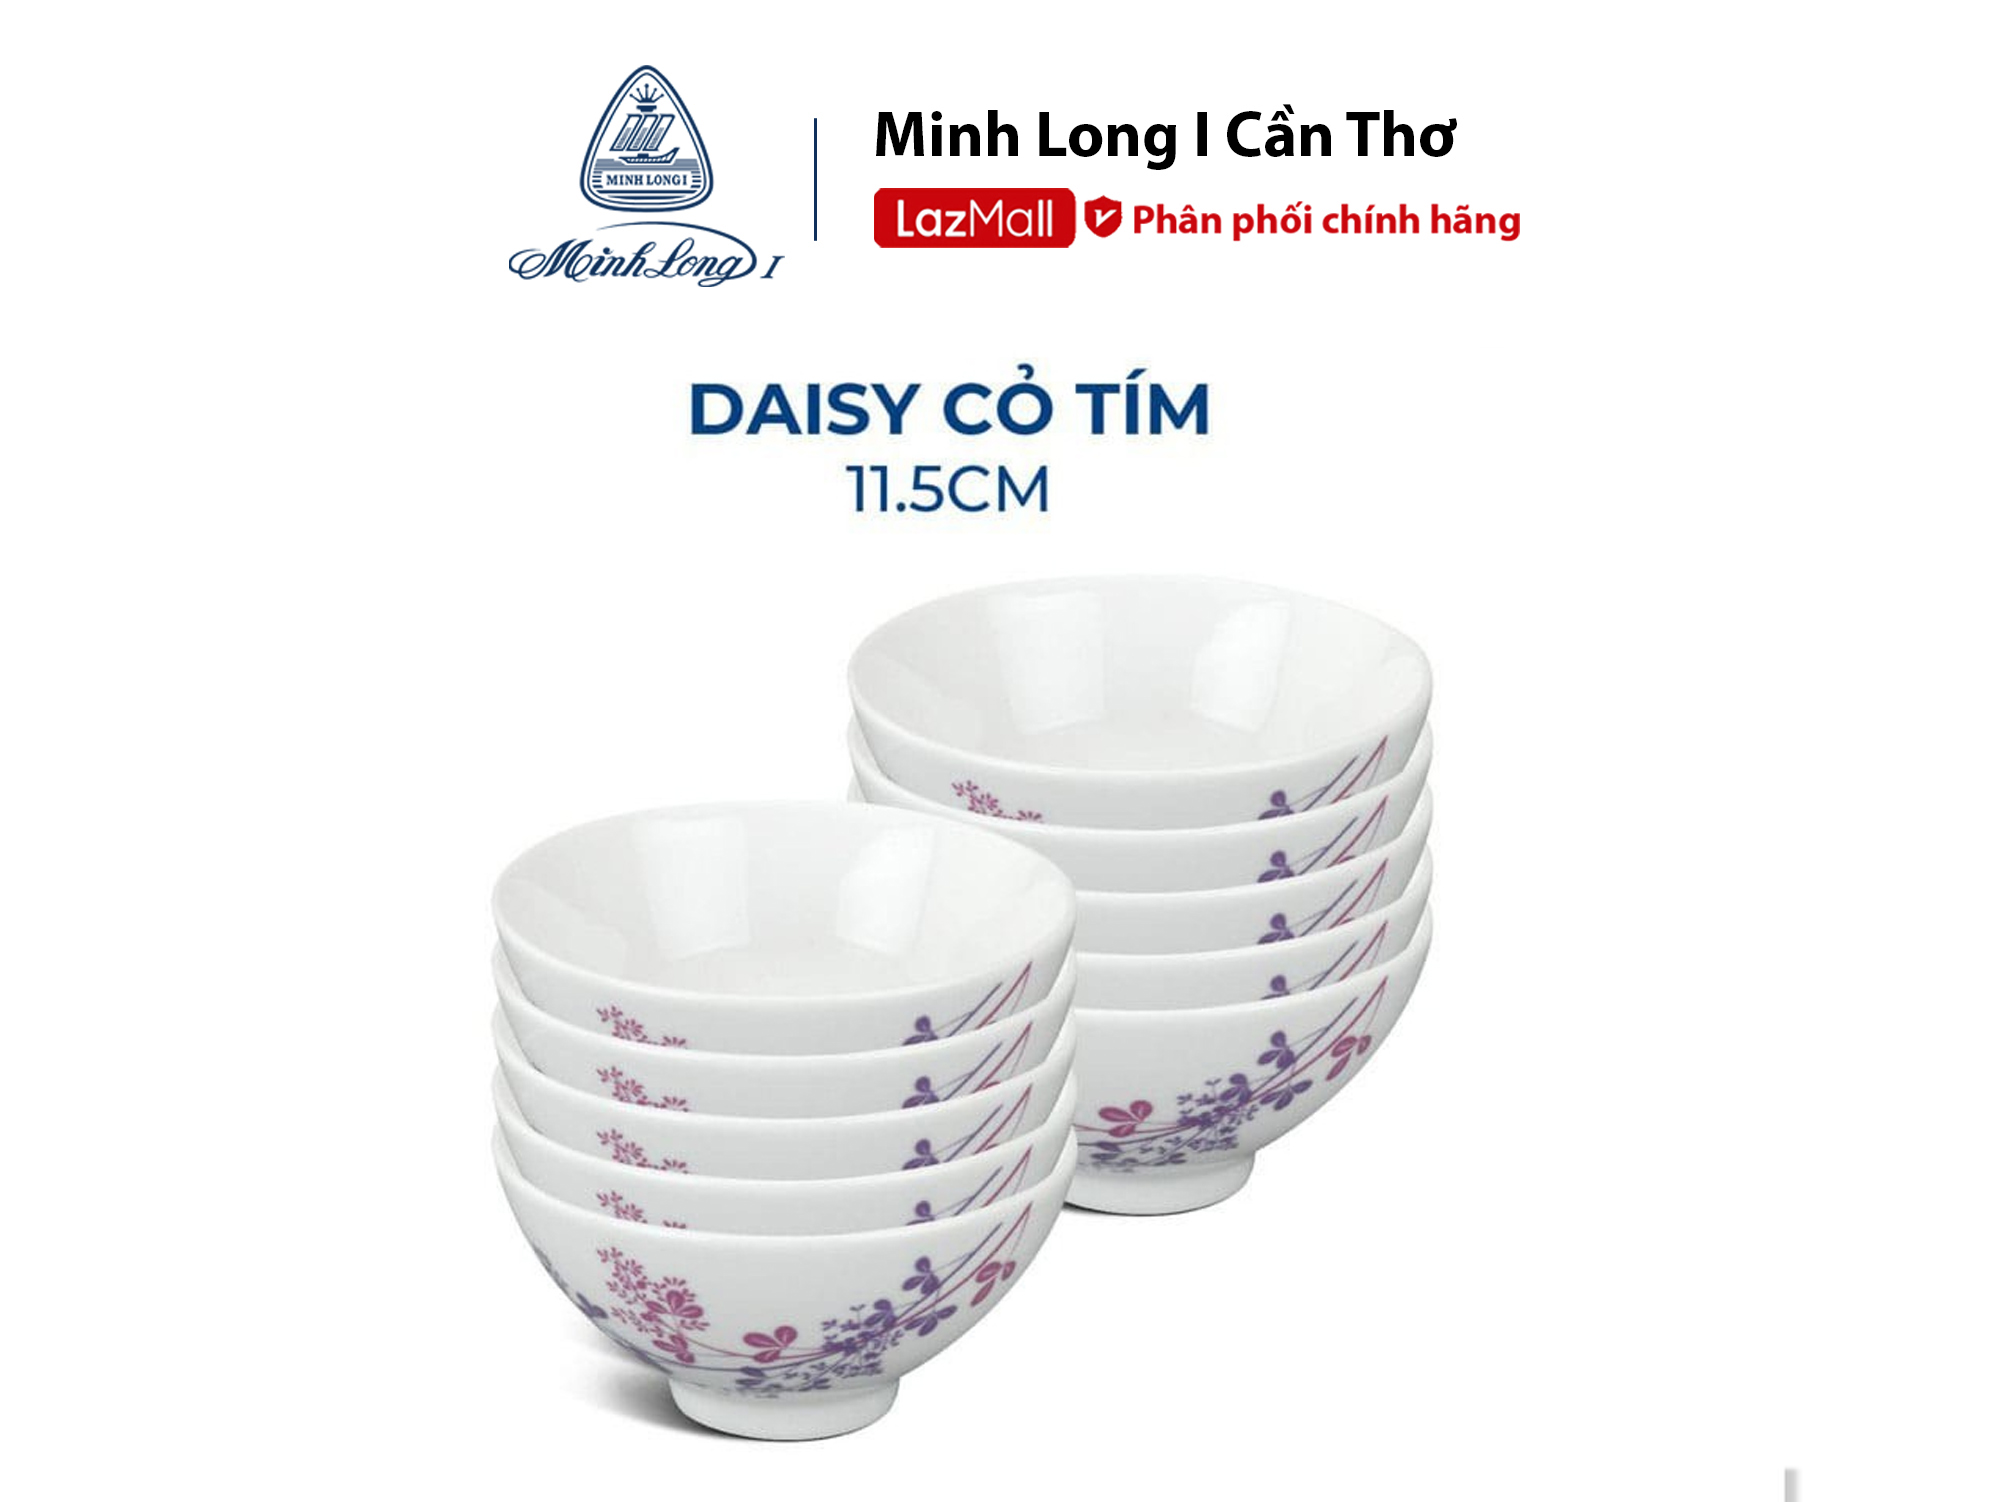 Bộ 10 Chén Cơm sứ cao cấp Minh Long 11.5cm - Daisy Cỏ Tím - hàng đẹp cao cấp dùng để ăn cơm trong gia đình đãi khách tặng quà tết